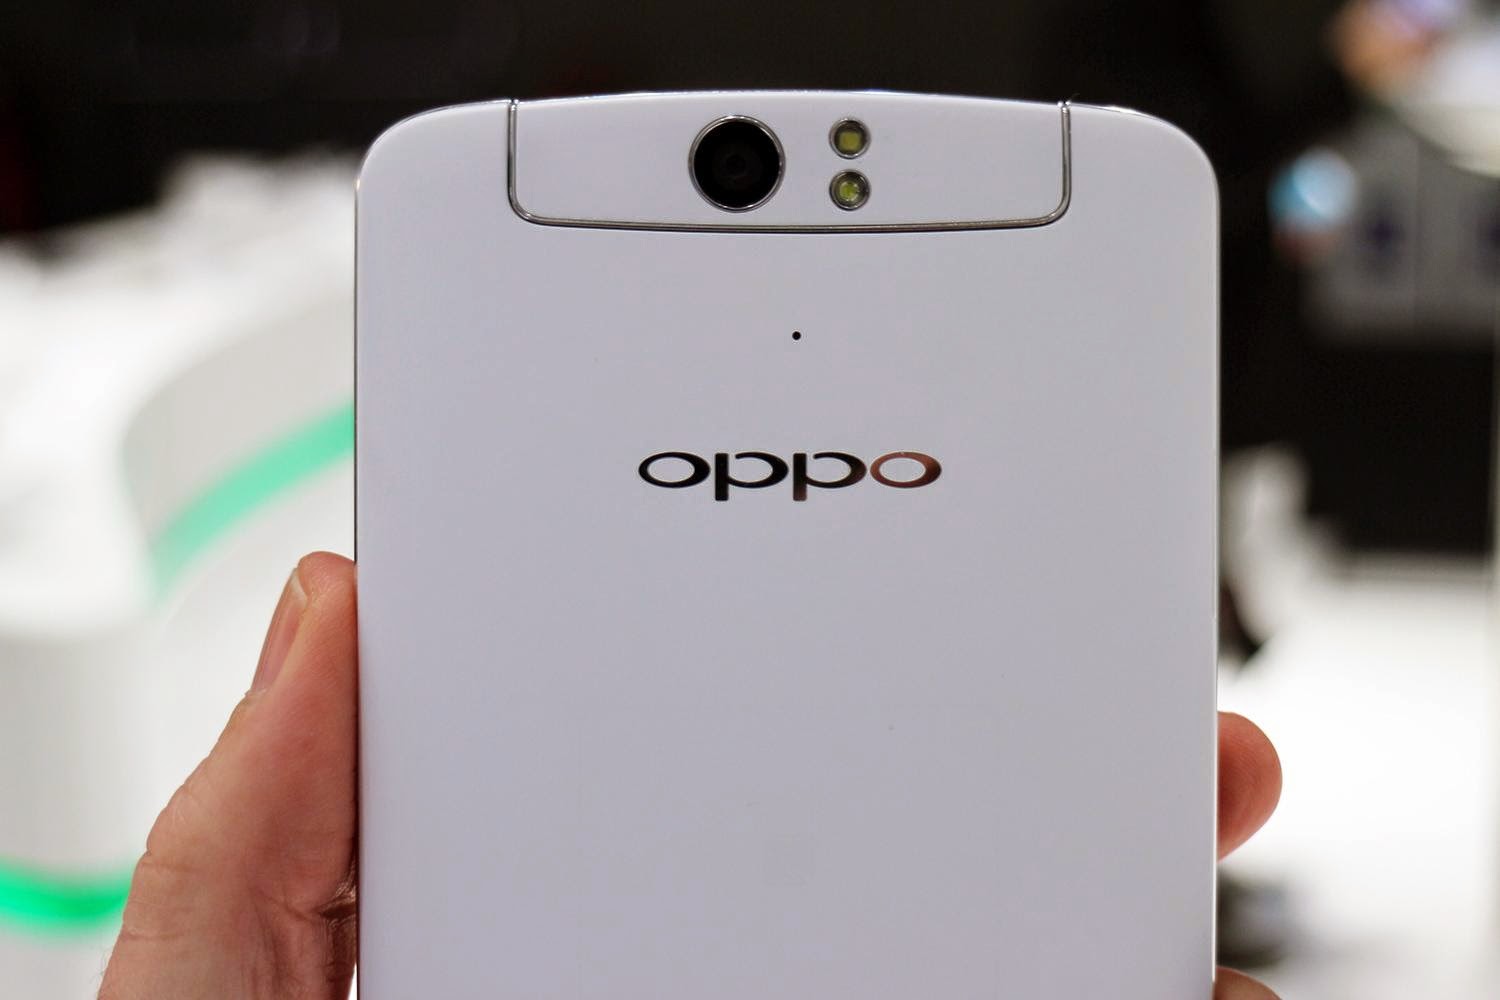 هاتف OPPO N3 المنتظر بشدة قادم بشاشة FULL HD وبسعر 4298 يوان صيني